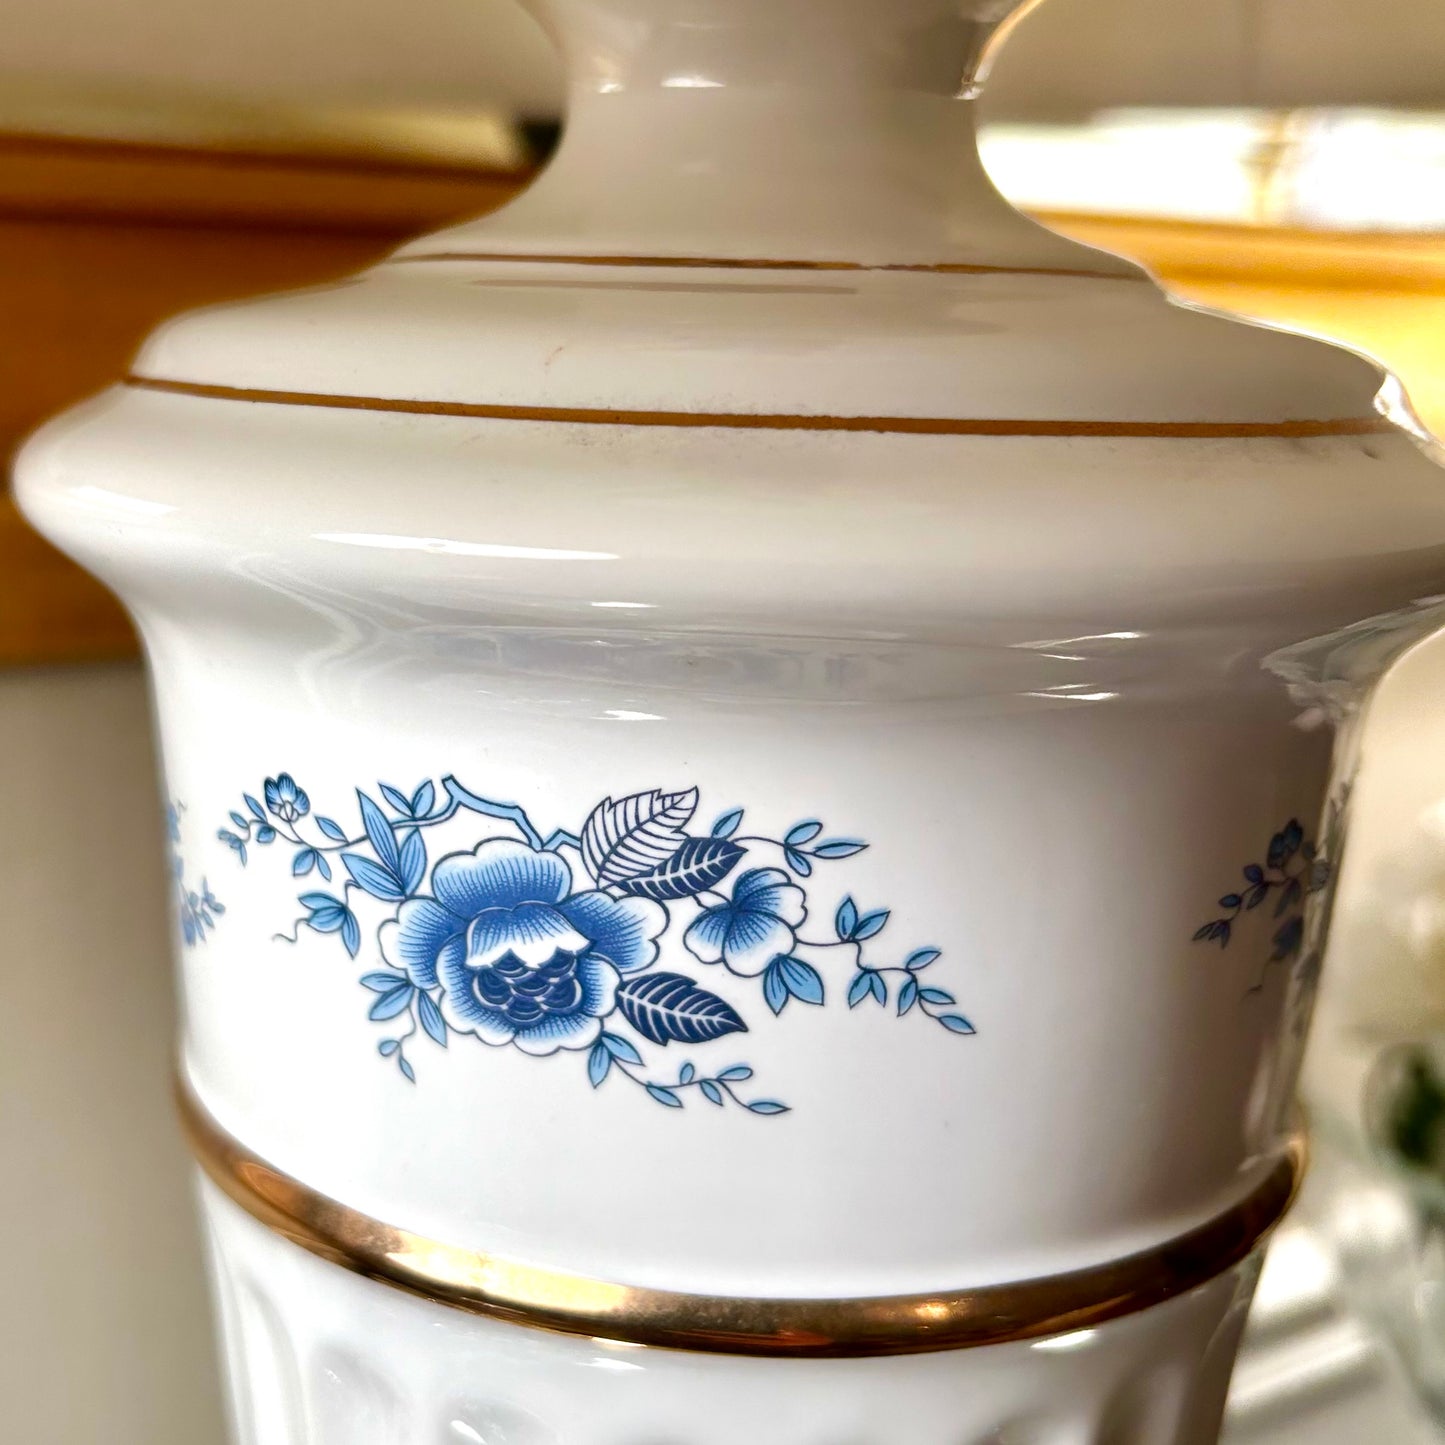 statuesque older Vintage designer blue & white  porcelain trophy lamp.